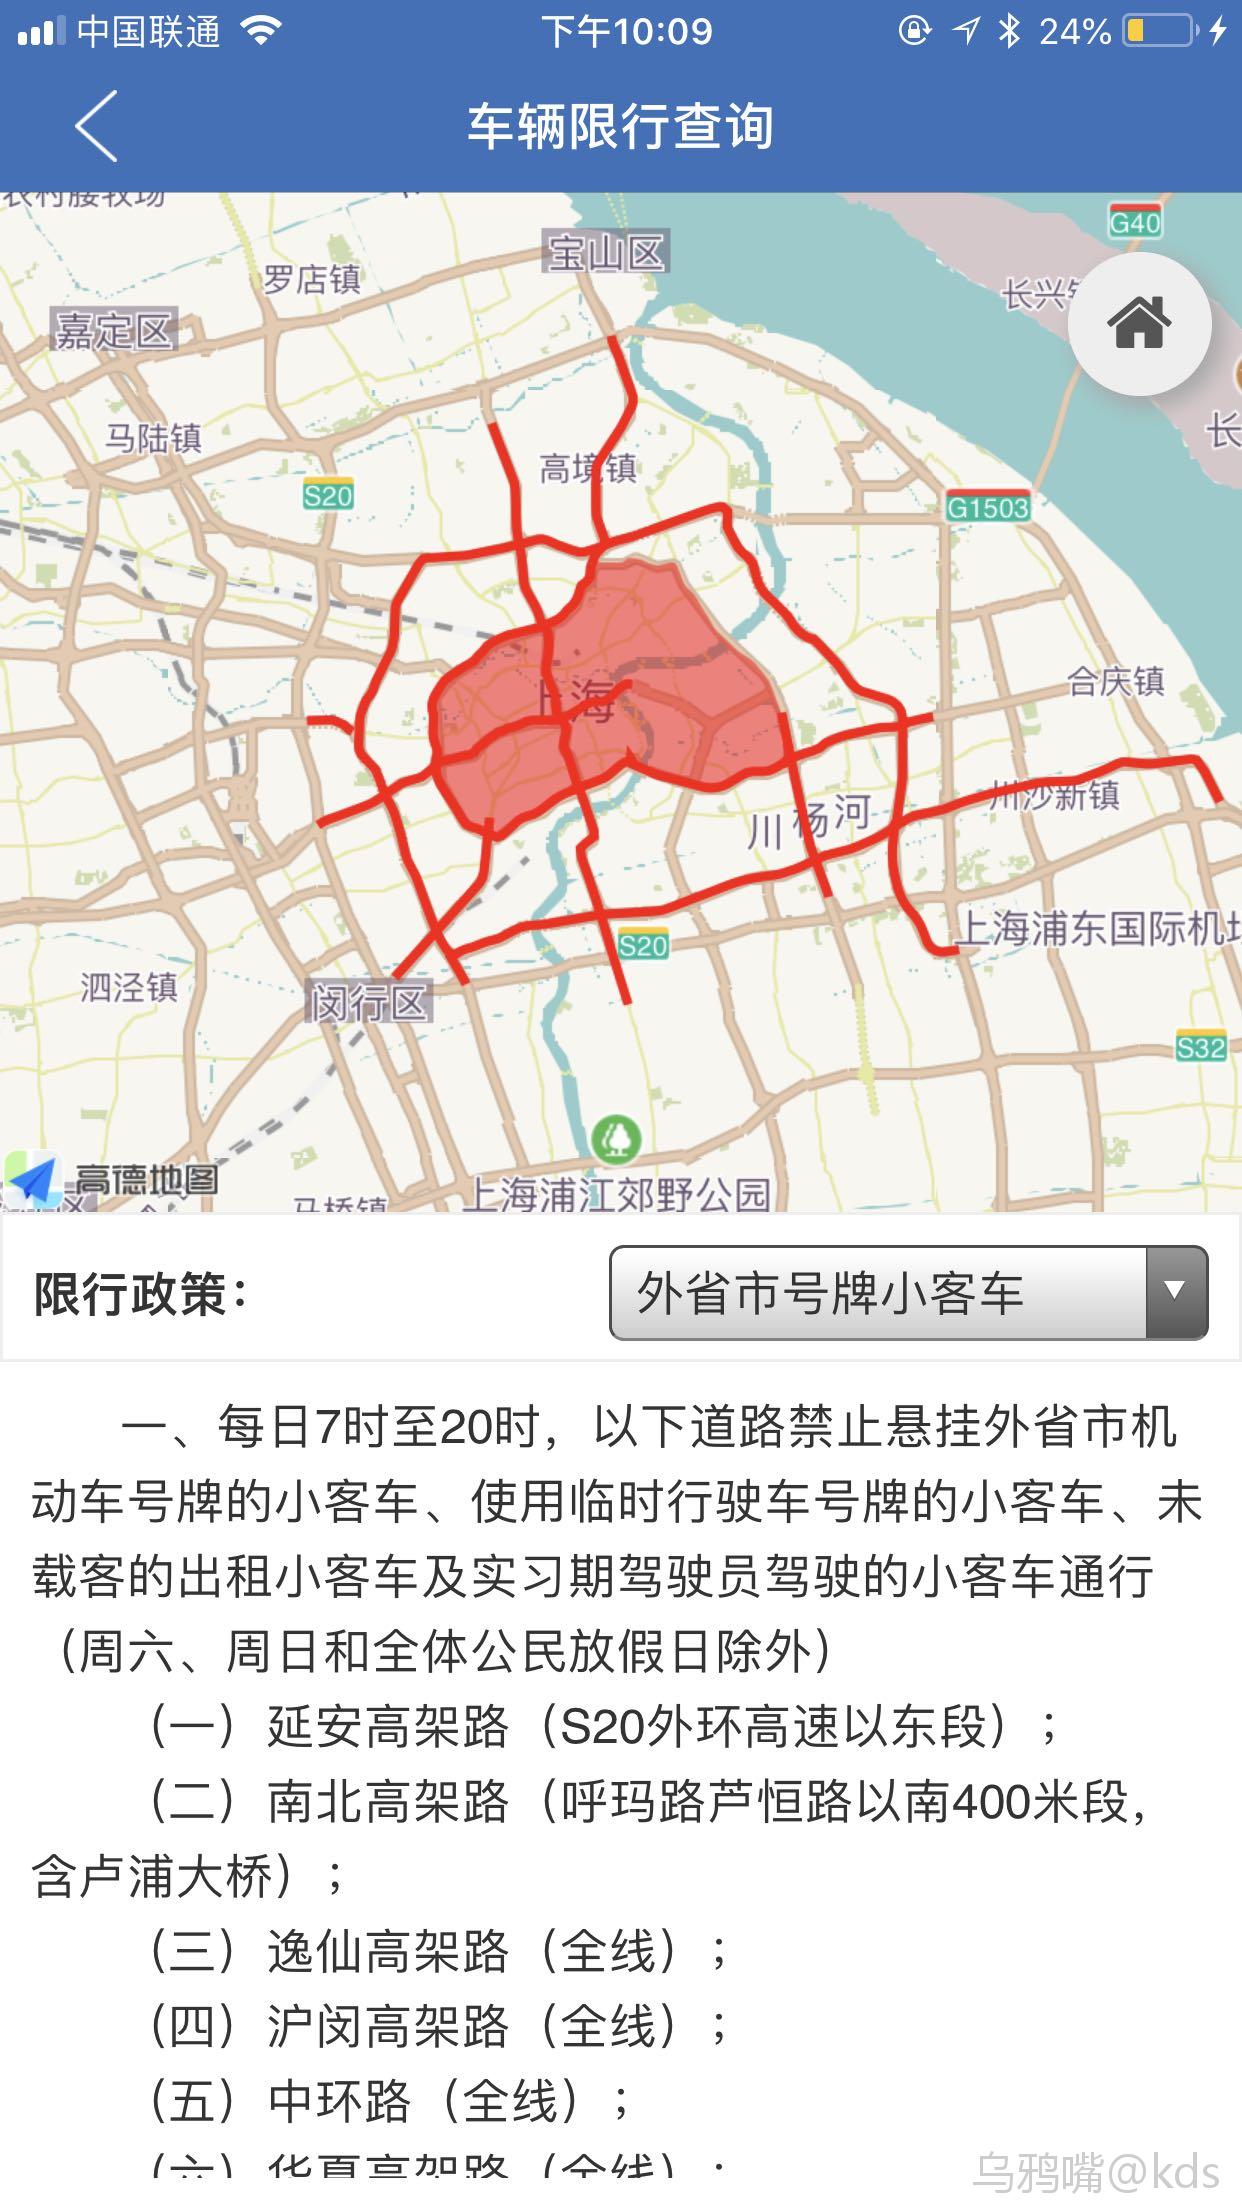 上海高架限行标志图片